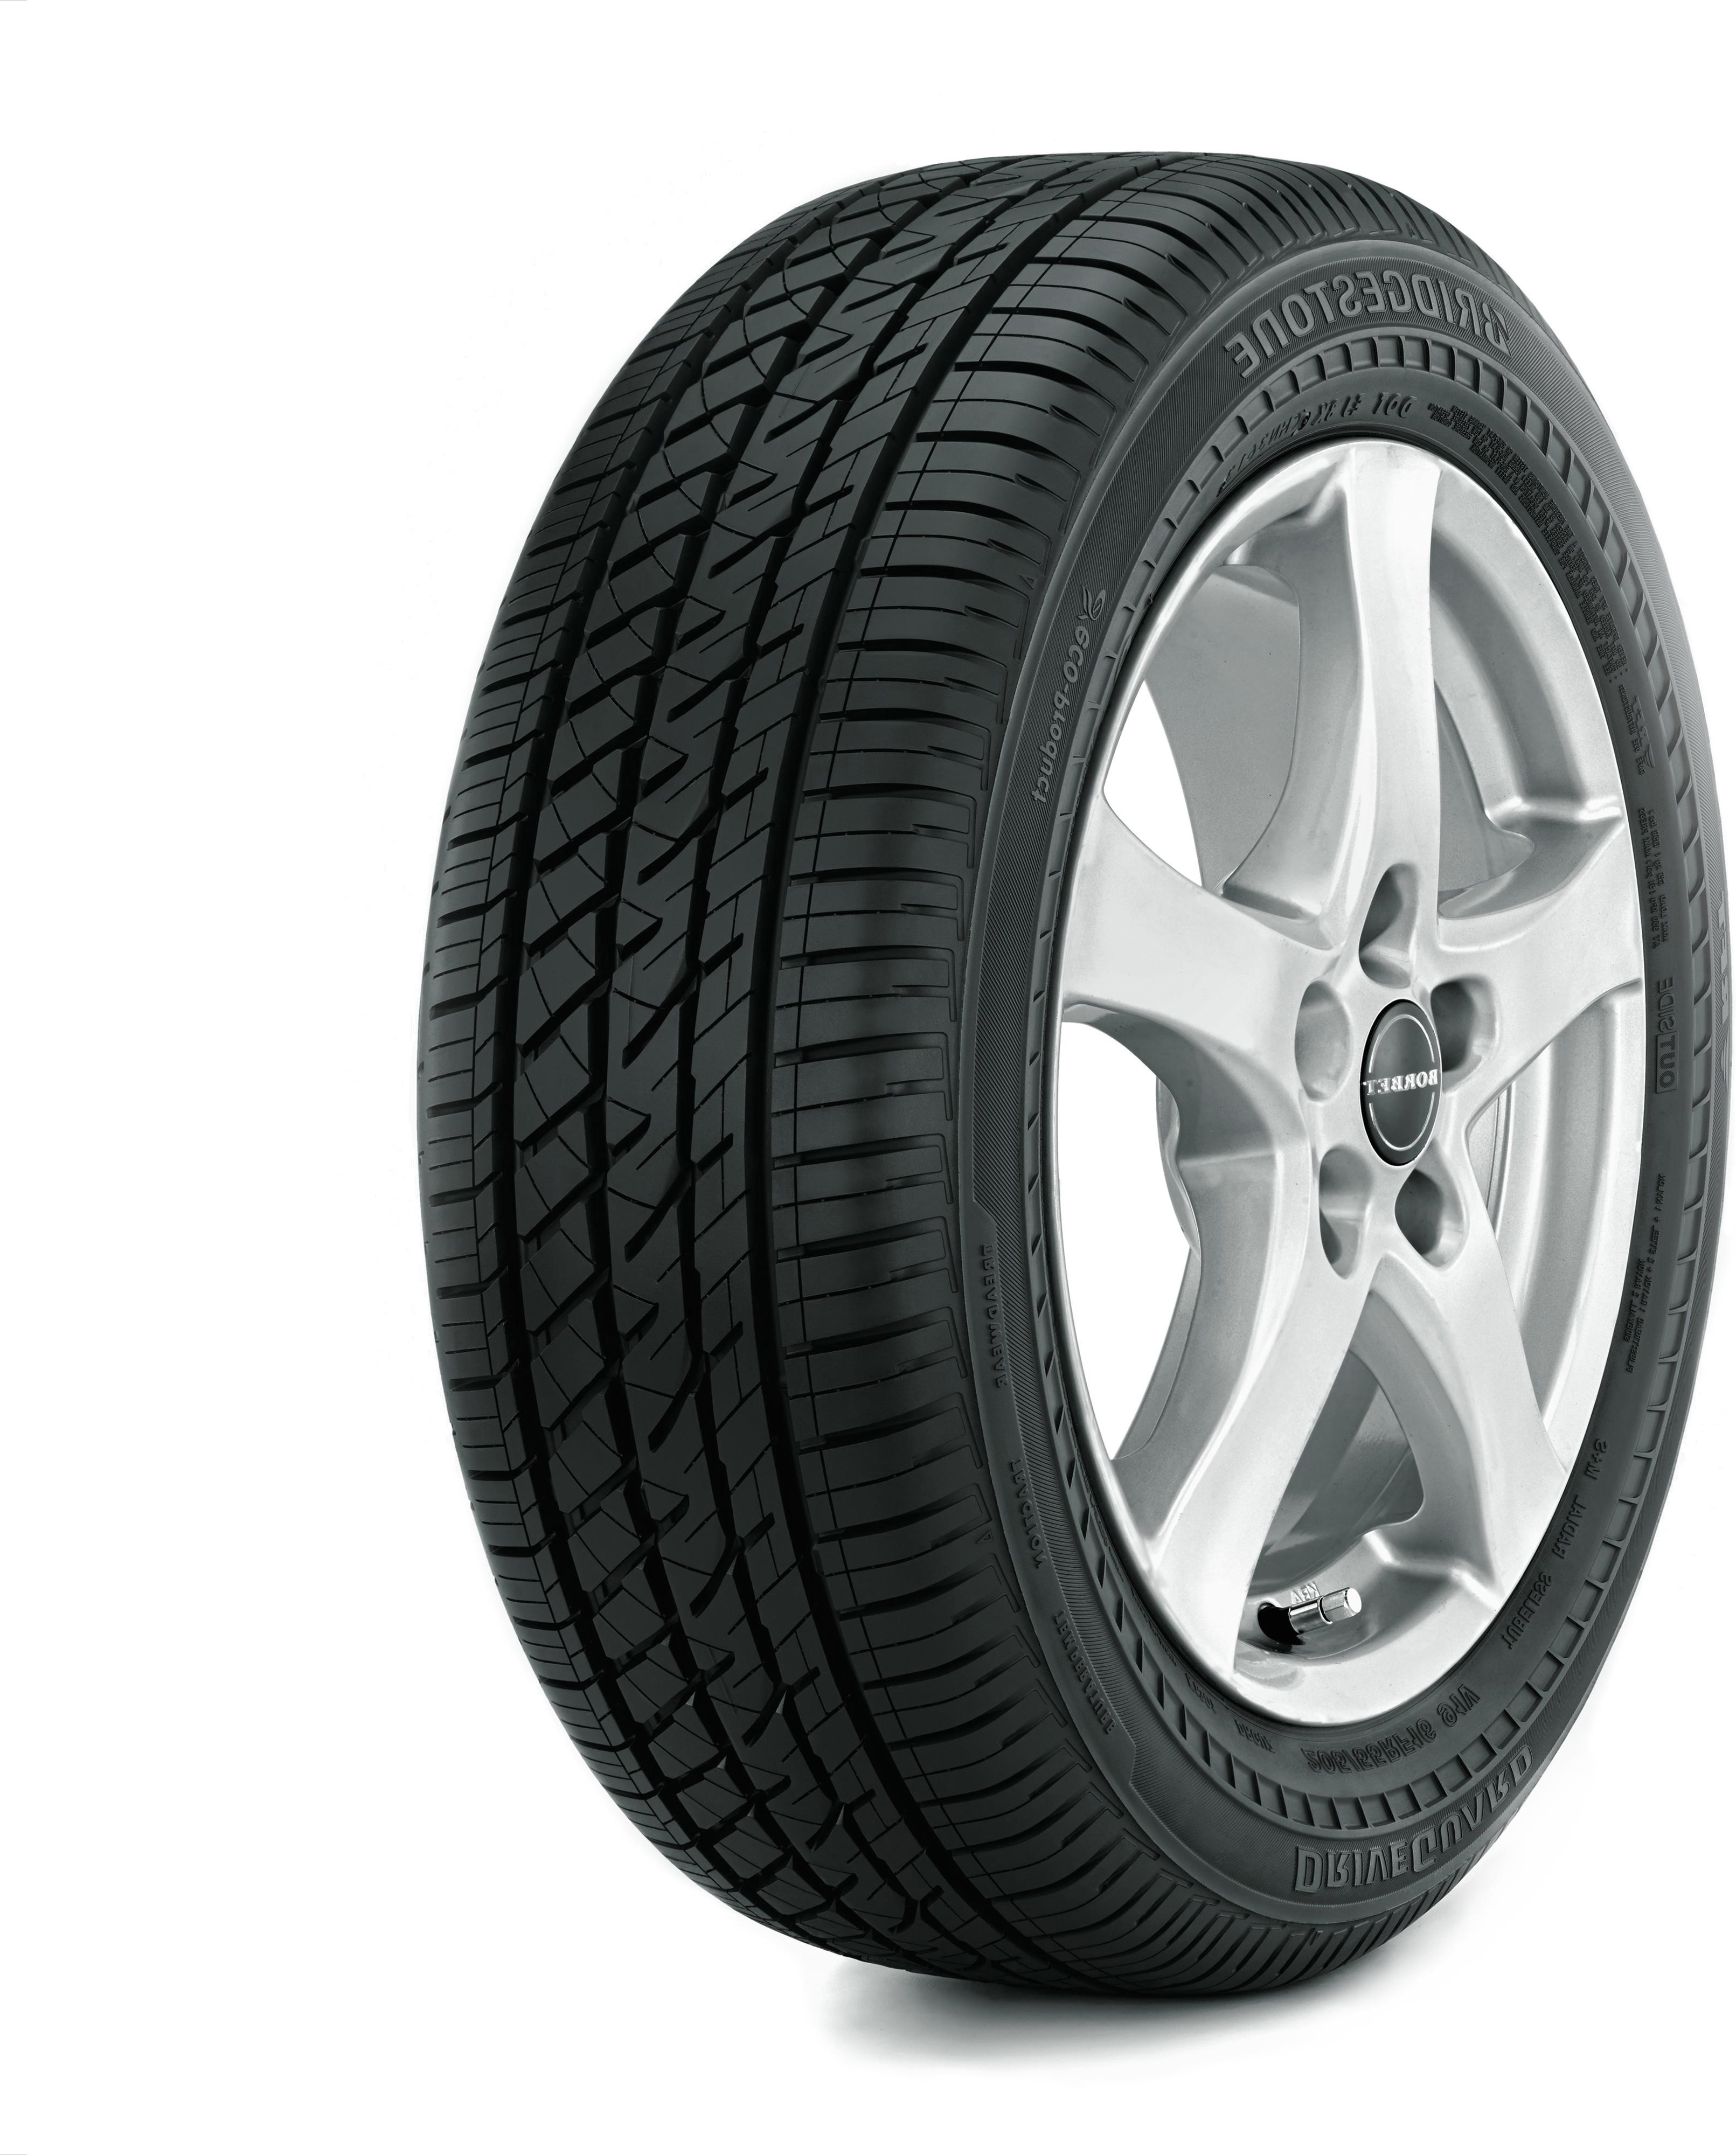 Bridgestone DriveGuard 225/50R17 94W -- | Best One Tire